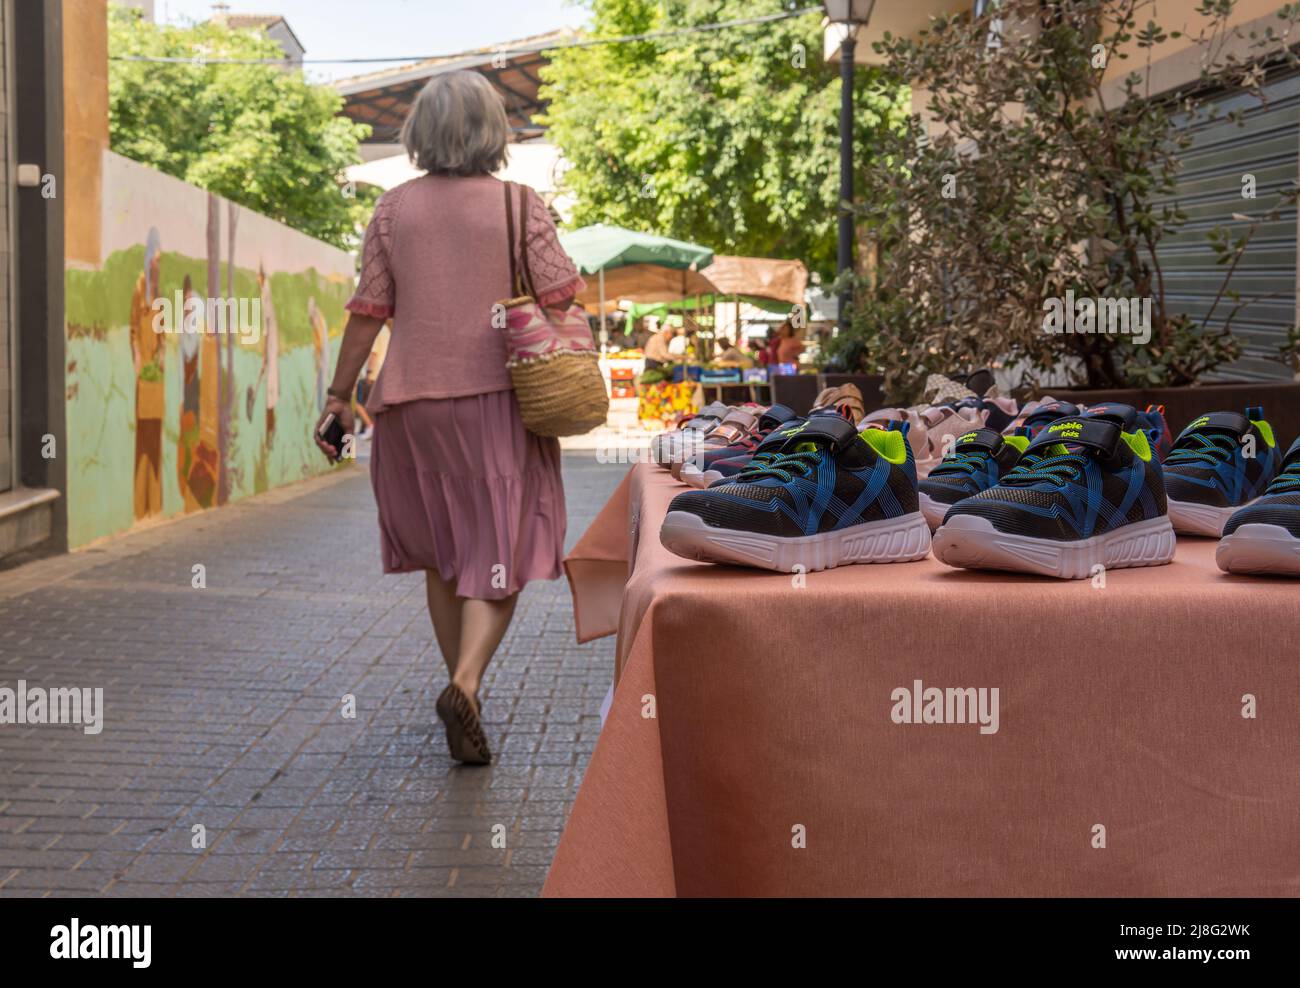 Manacor, Espagne; mai 14 2022: Gros plan d'une exposition de chaussures de sport pour enfants dans le centre historique de la ville majorquine de Manacor, Espagne Banque D'Images